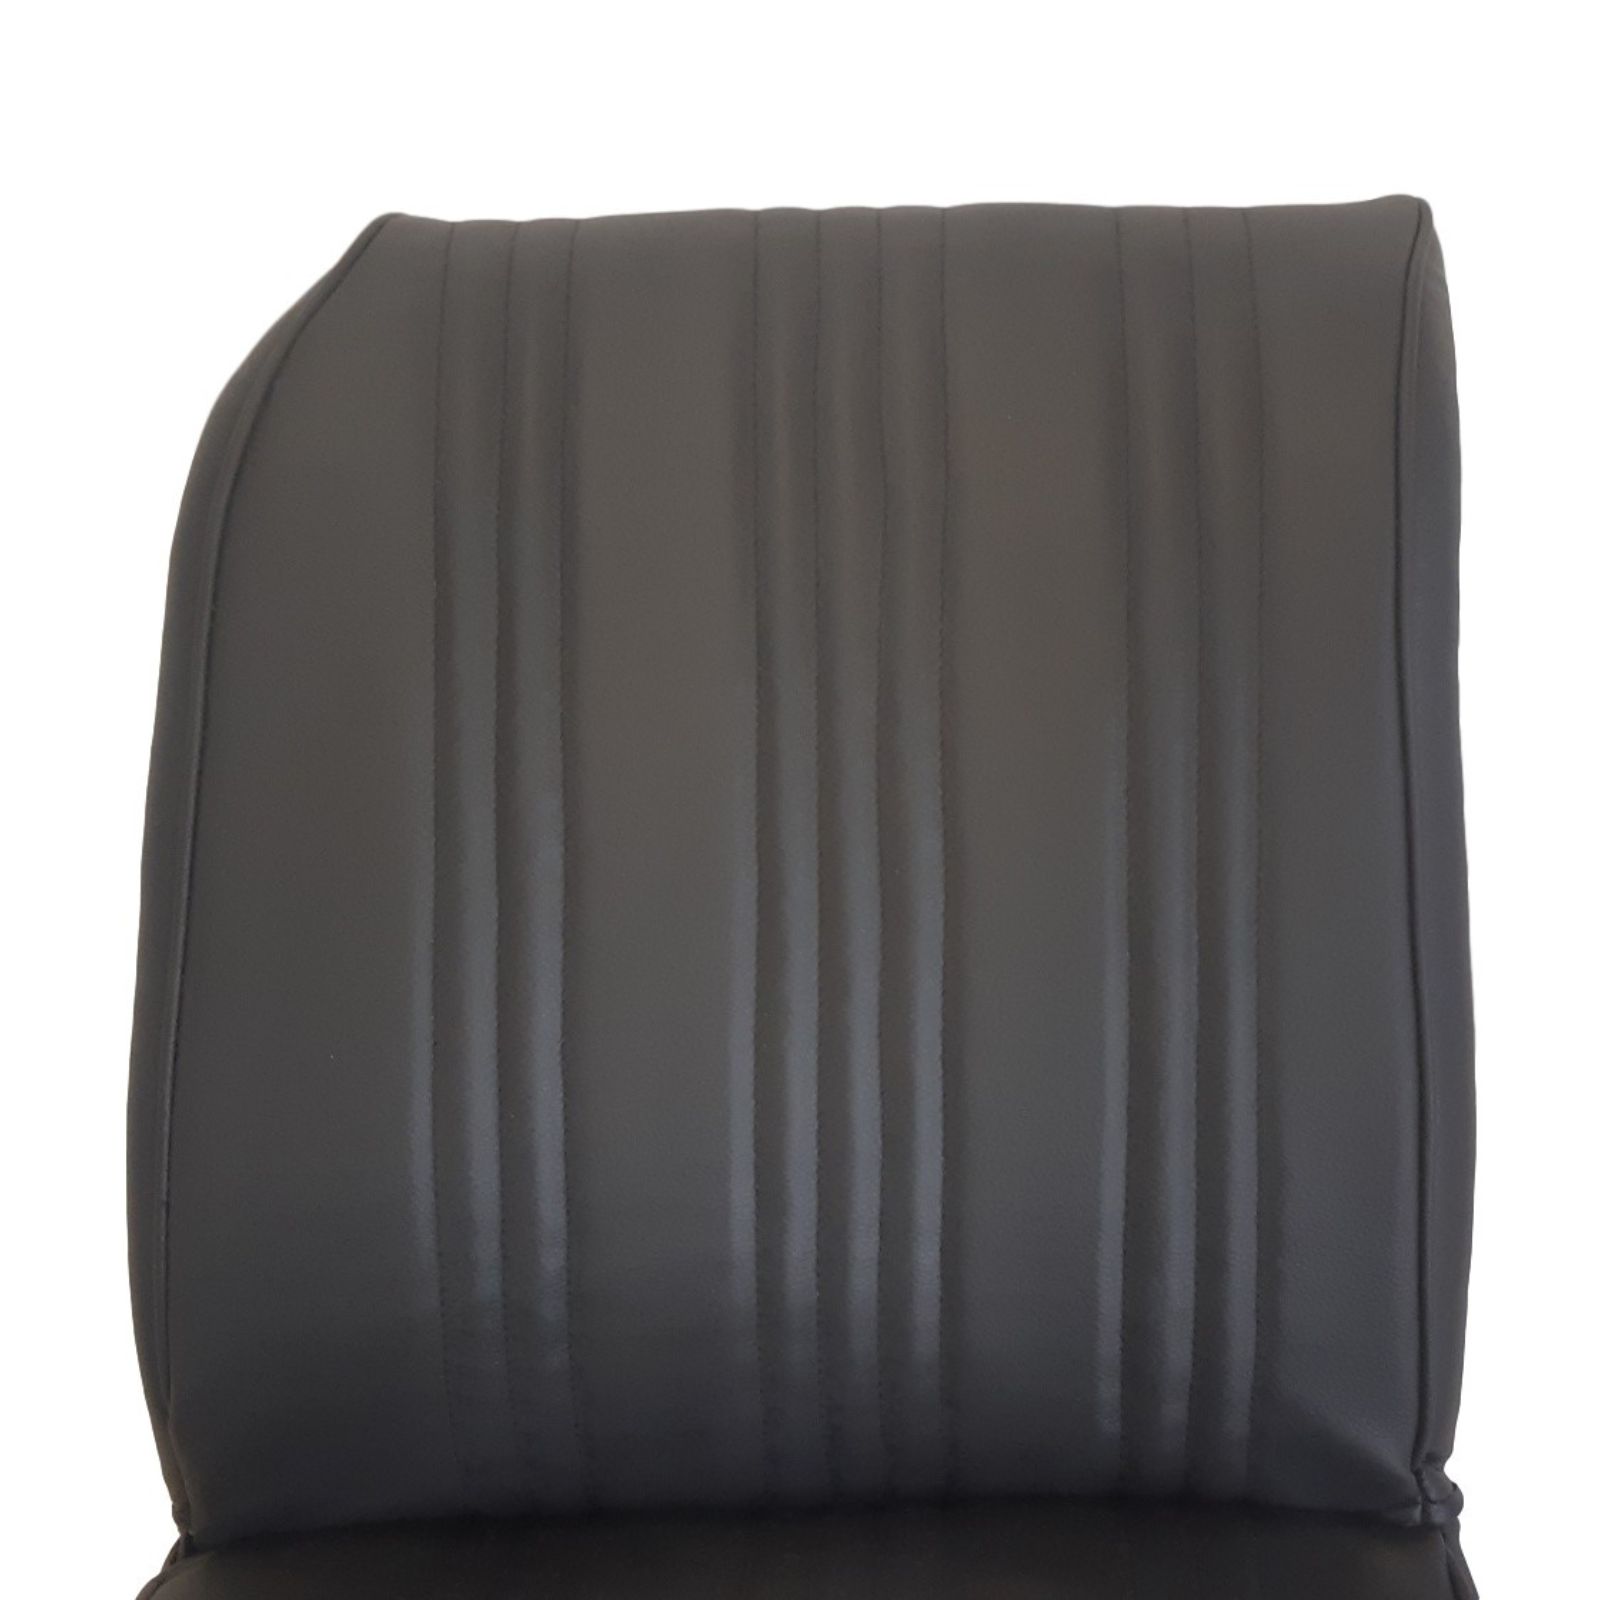 Coiffes de siège avant en simili cuir noir pour Citroën 2 CV